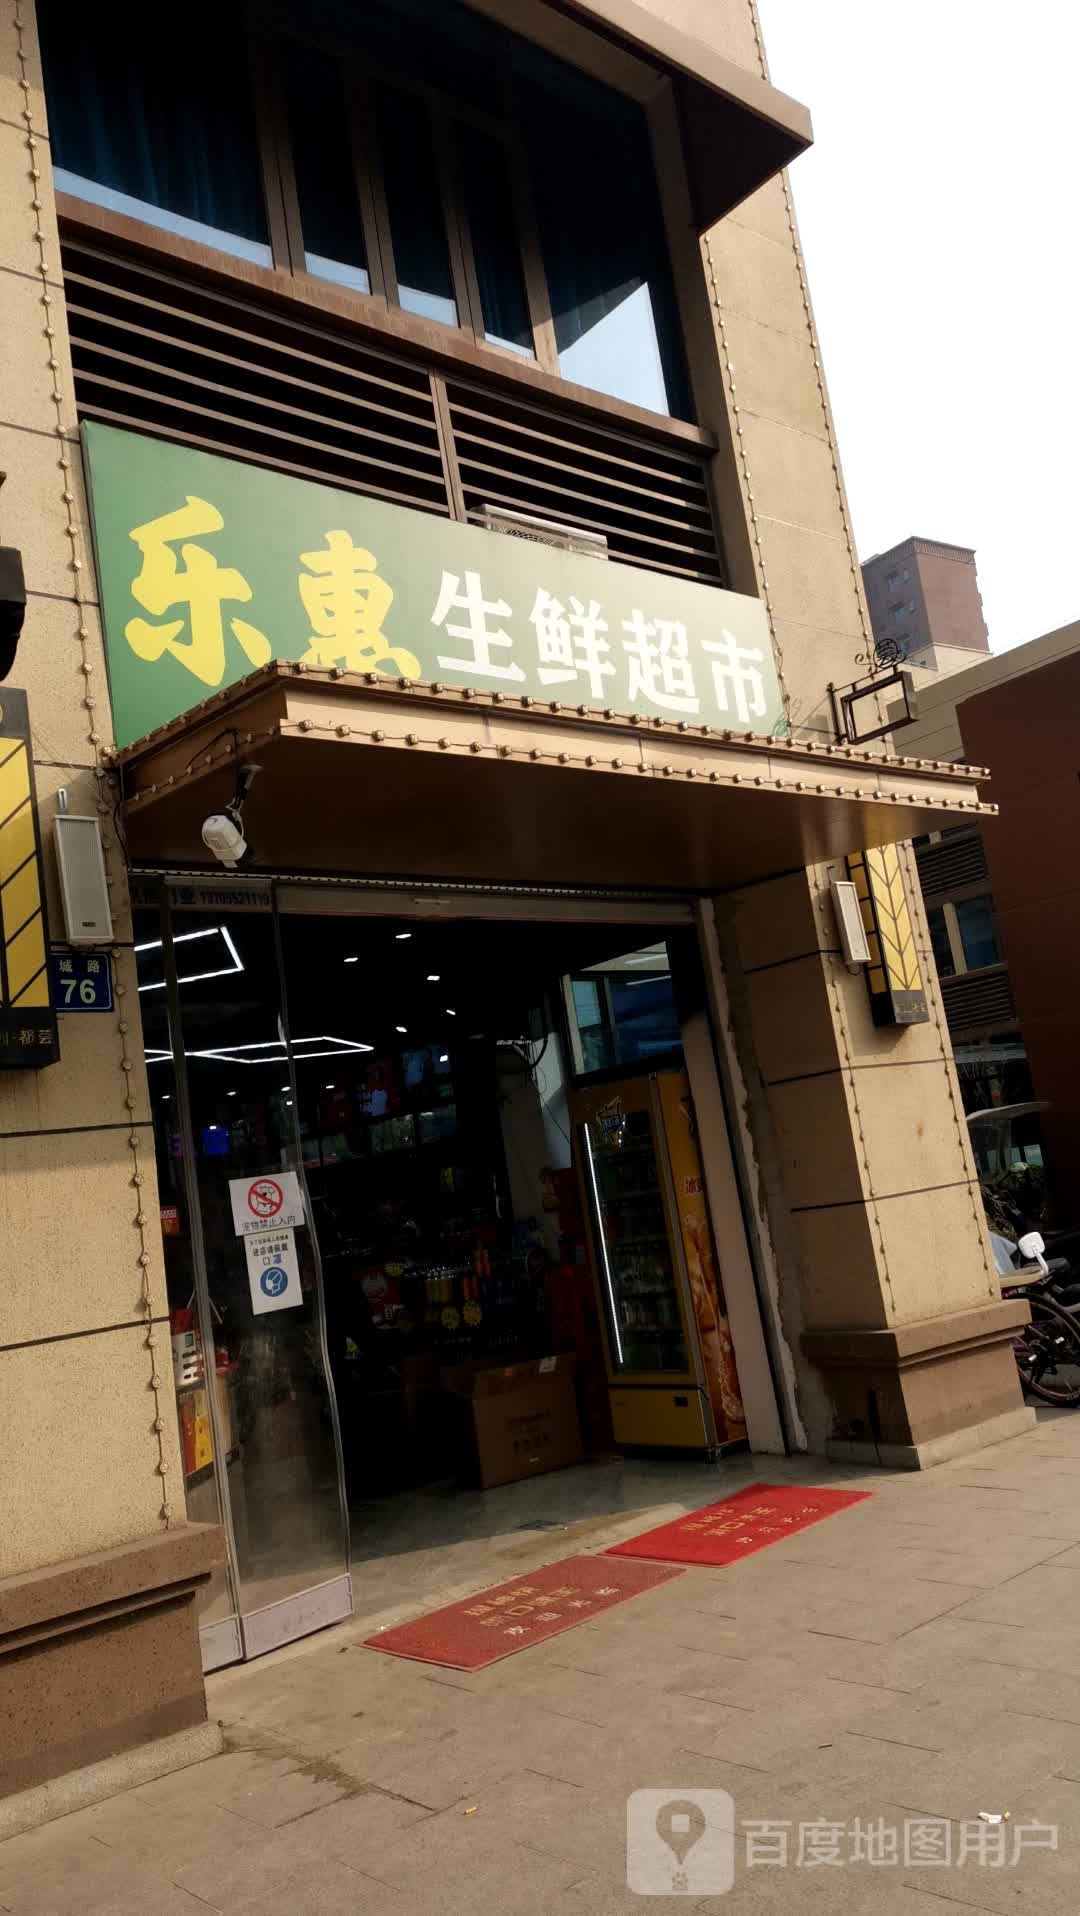 乐惠生鲜超市(珠城路店)